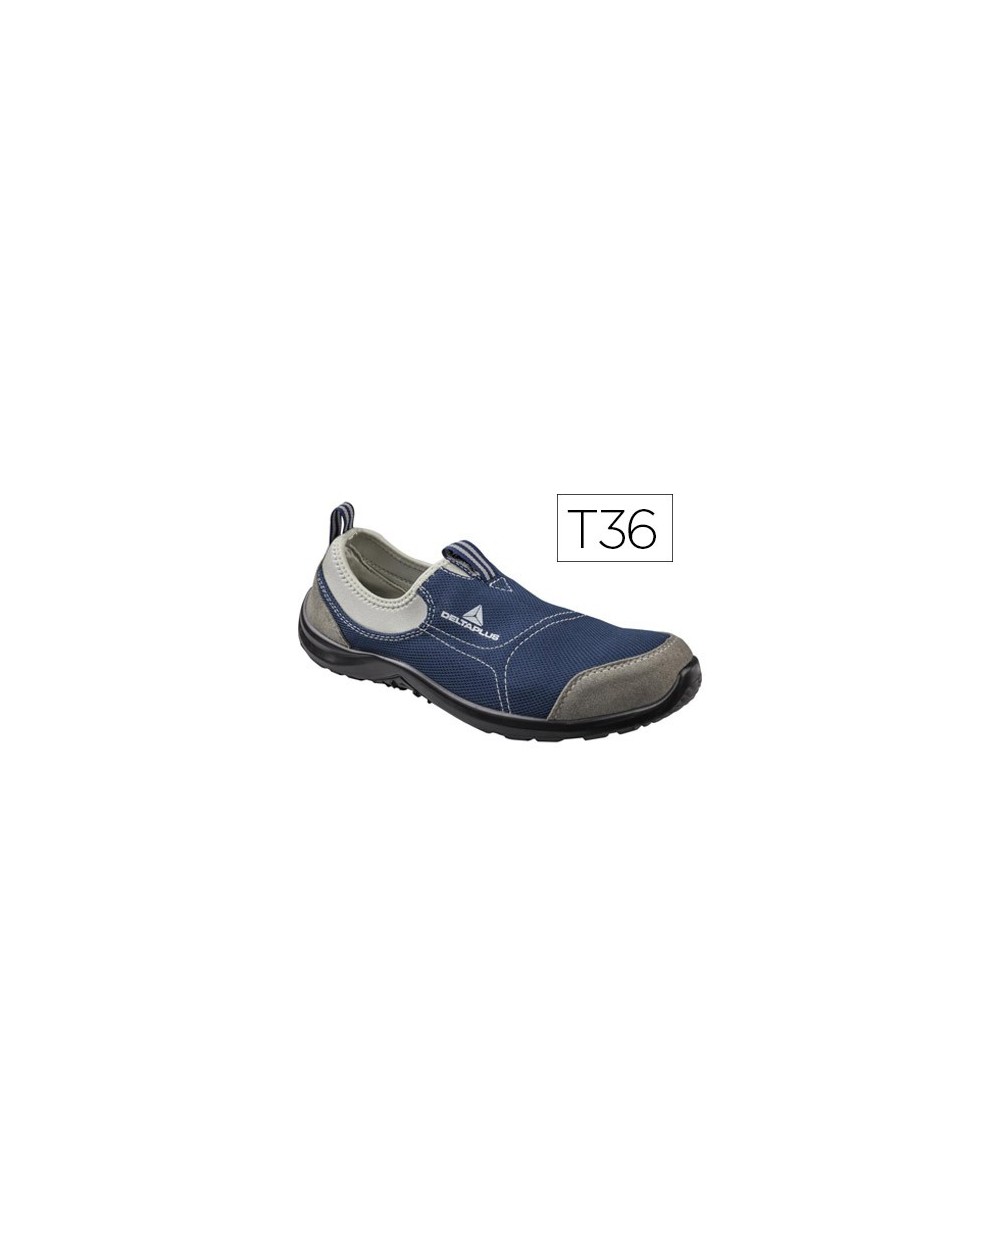 Zapatos de seguridad deltaplus de poliester y algodon con plantilla y puntera color azul marino talla 36